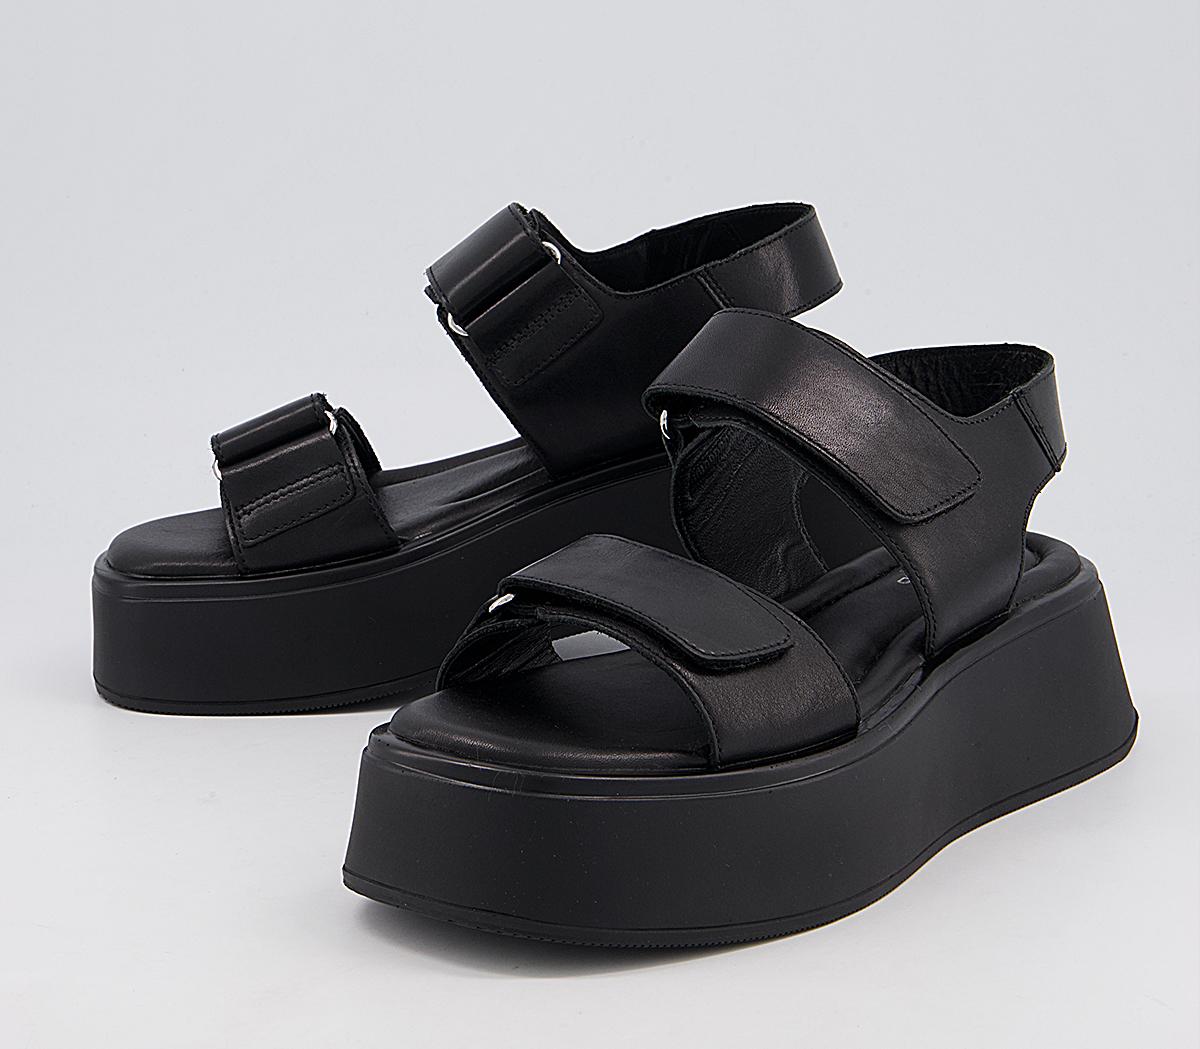 Vagabond Shoemakers Courtney 2 Strap Sandals Black - Women’s Sandals